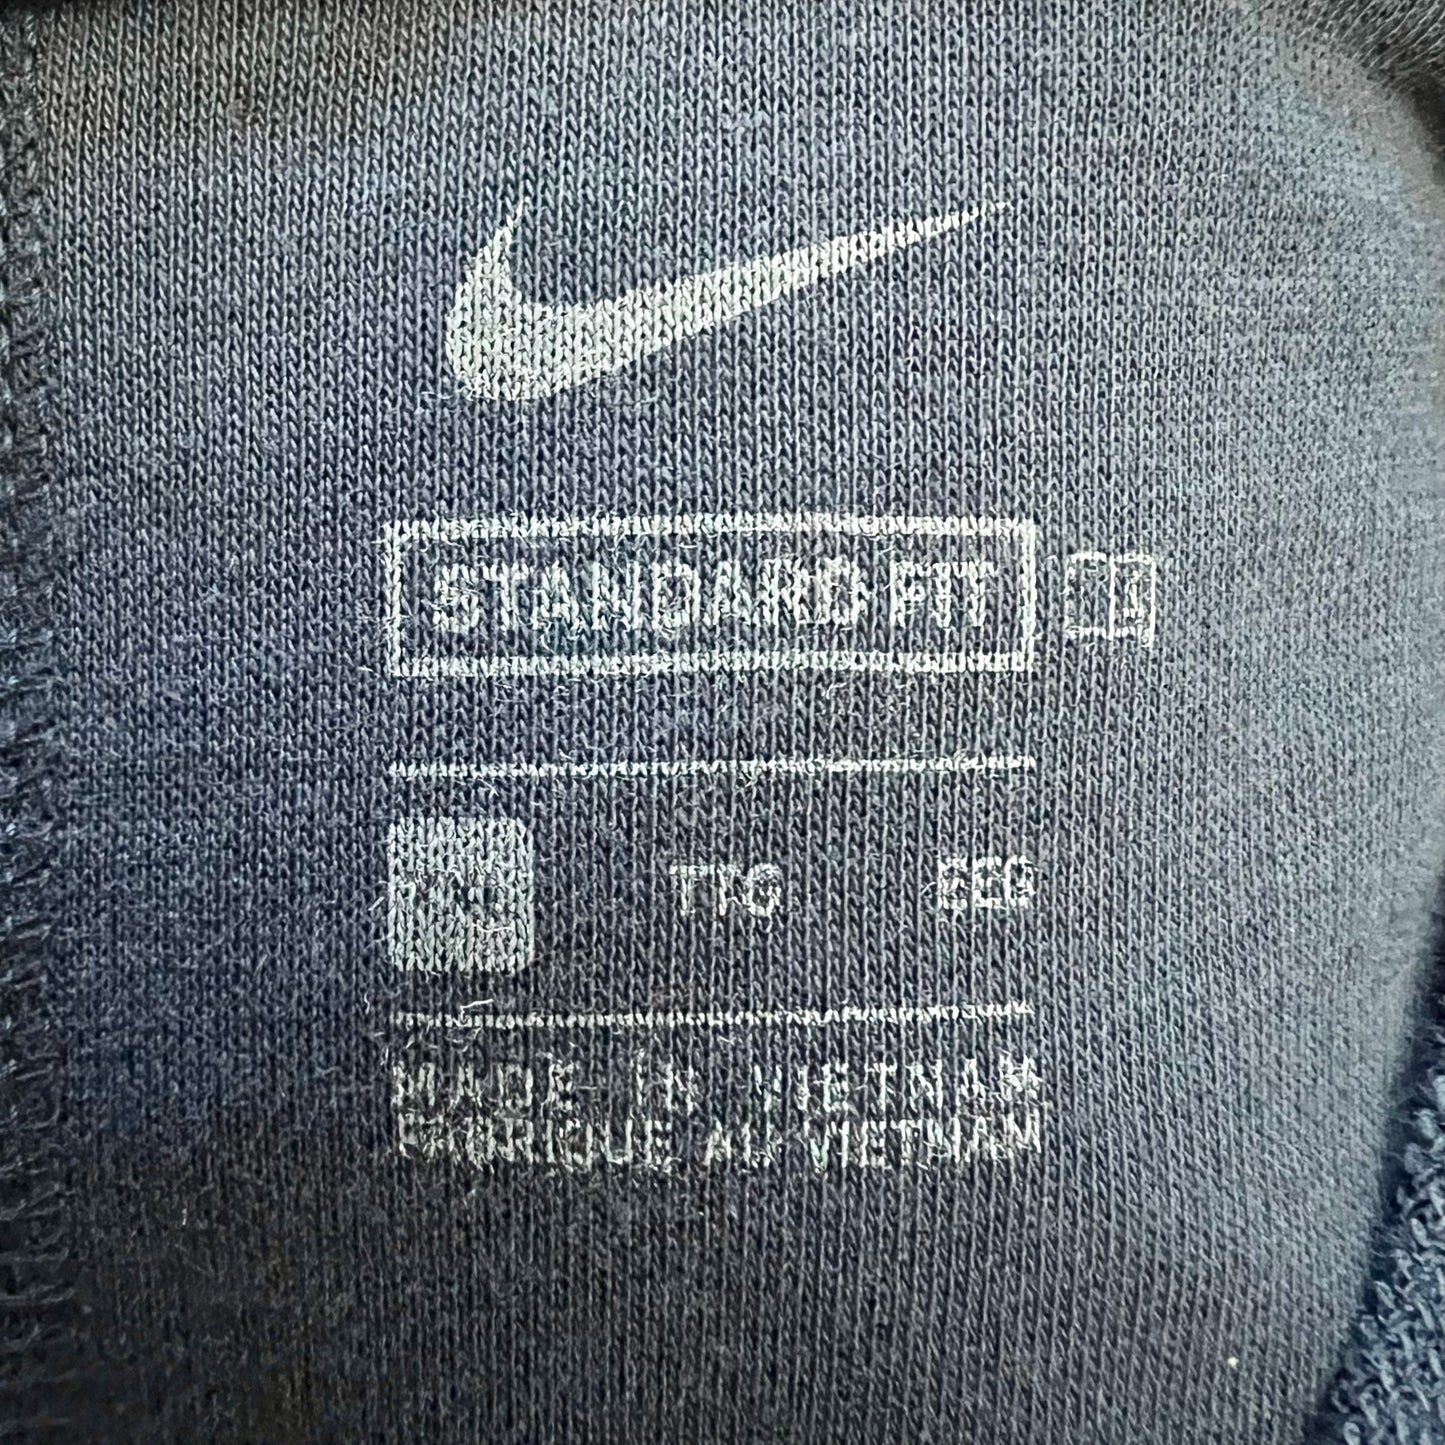 Sweatshirt Crewneck By Nike Apparel  Size: Xxl